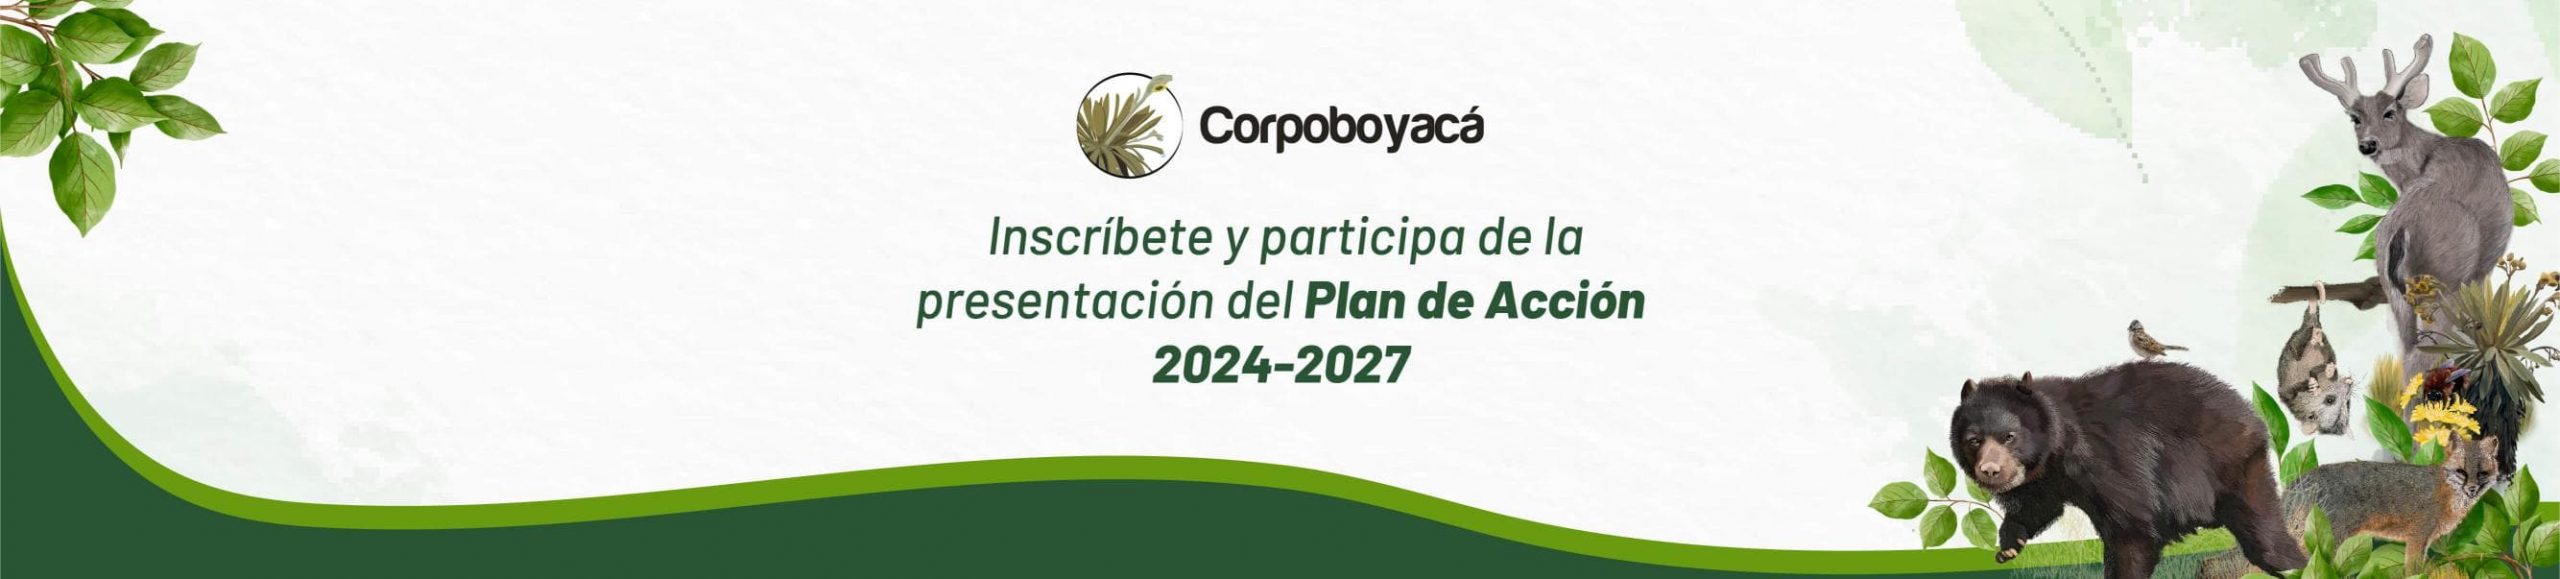 Participa de la presentación del plan de acción